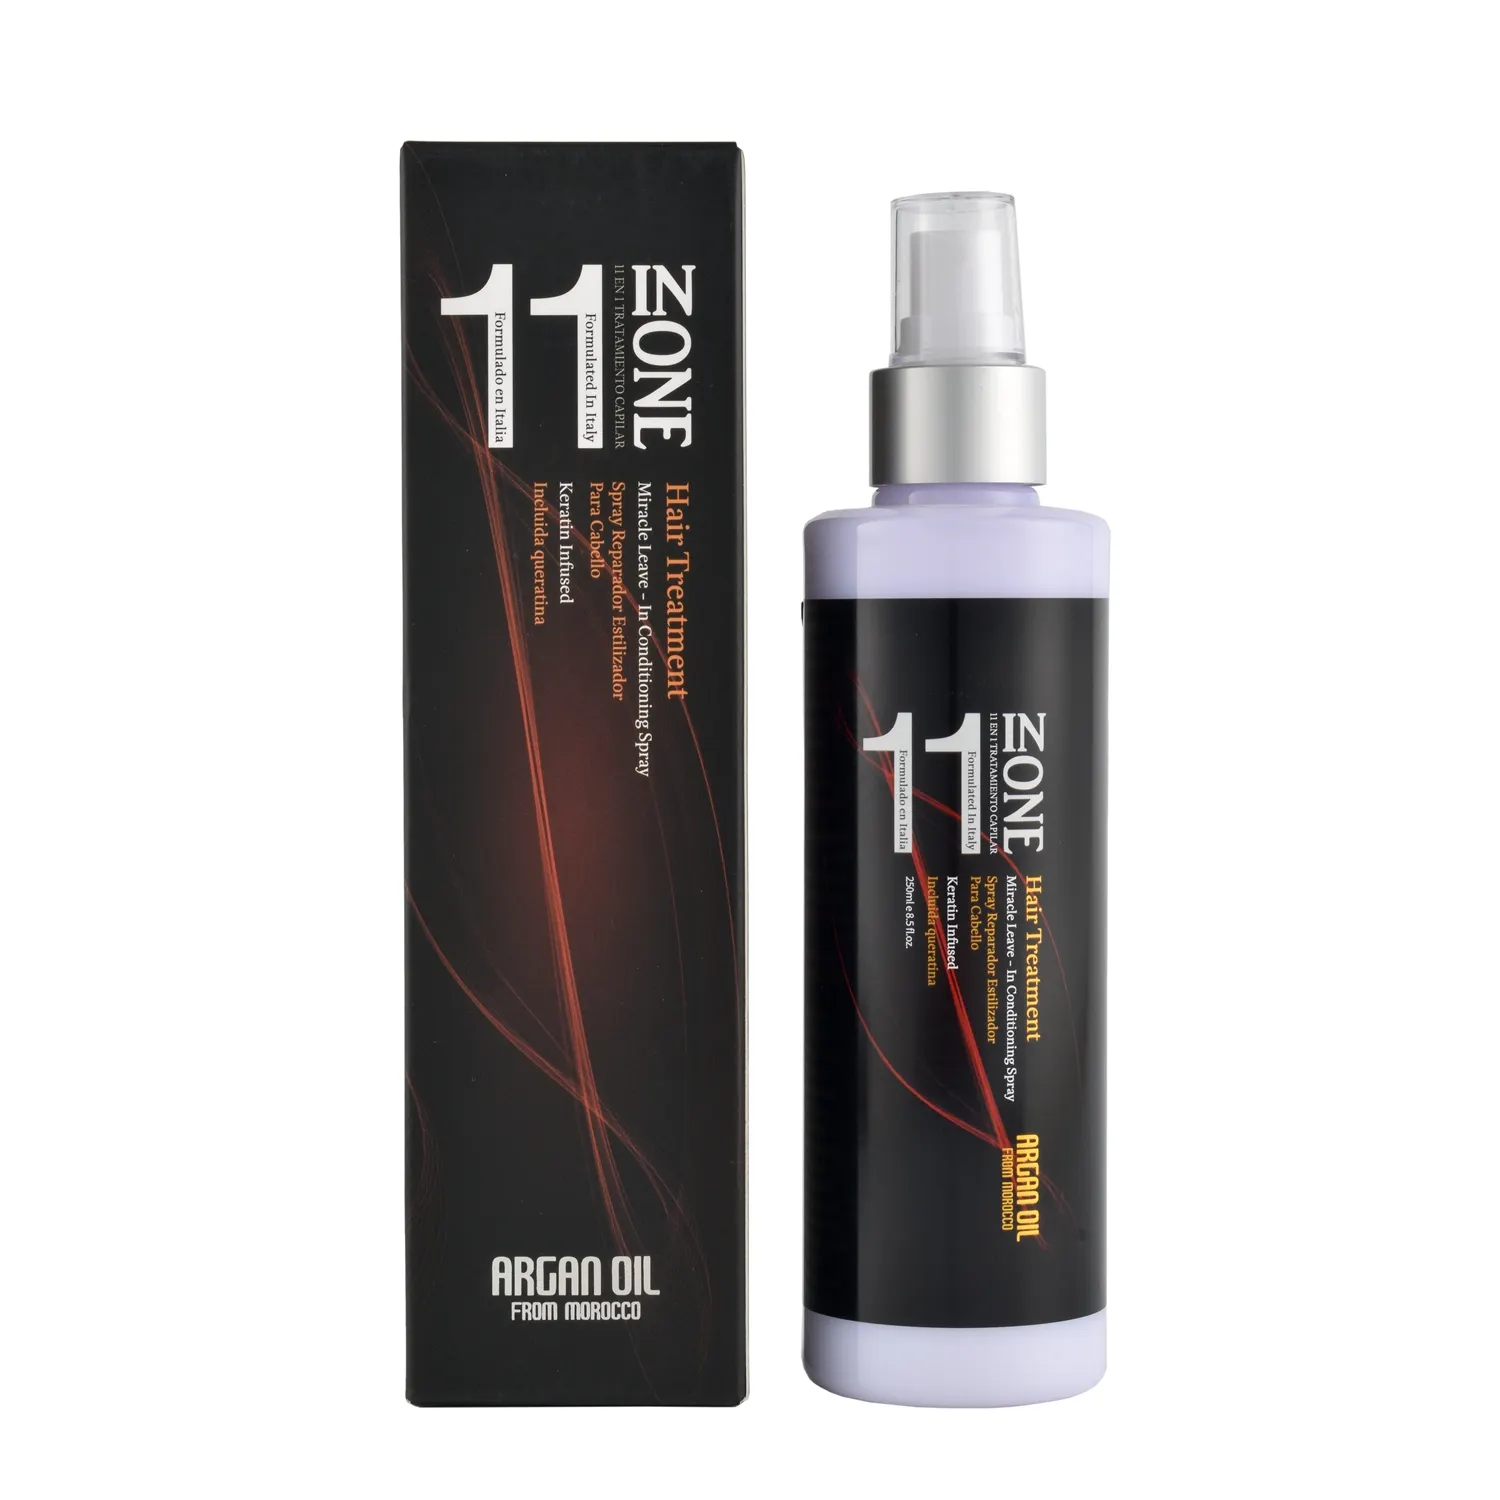 All'ingrosso 11 in 1 olio di Argan biologico per la cura dei capelli lascia nella nebbia Spray per capelli con protezione dal calore